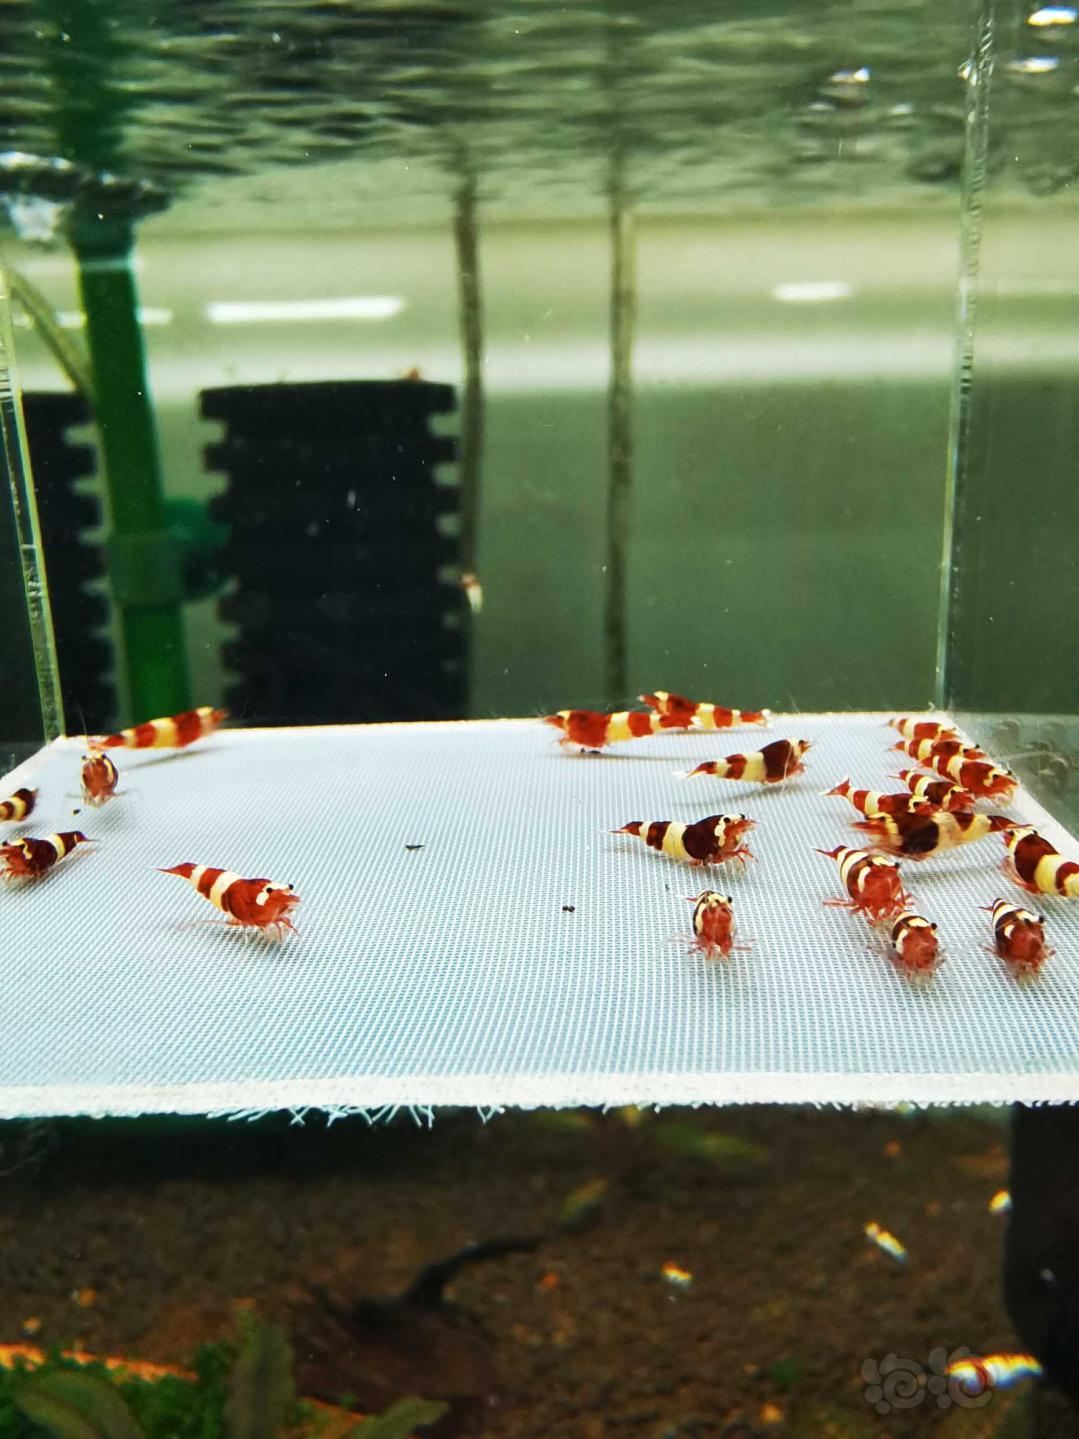 【虾】2021-5-8#RMB拍卖#酒红水晶虾一份20只-图2